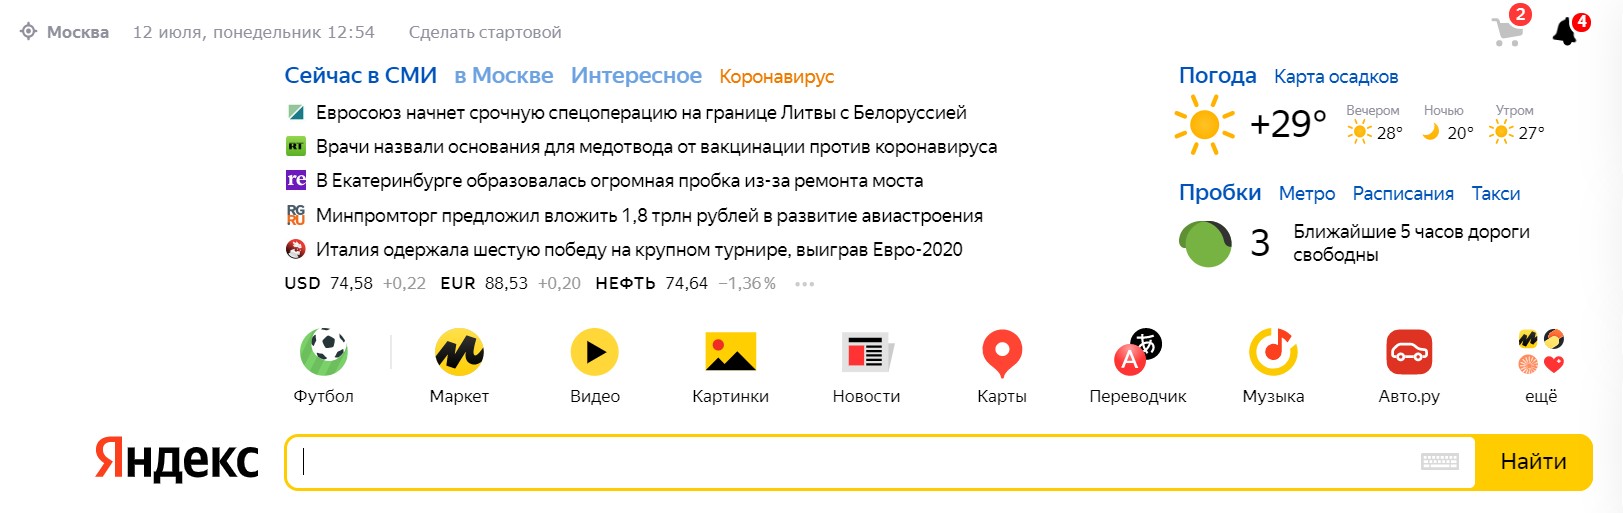 новости в Яндексе